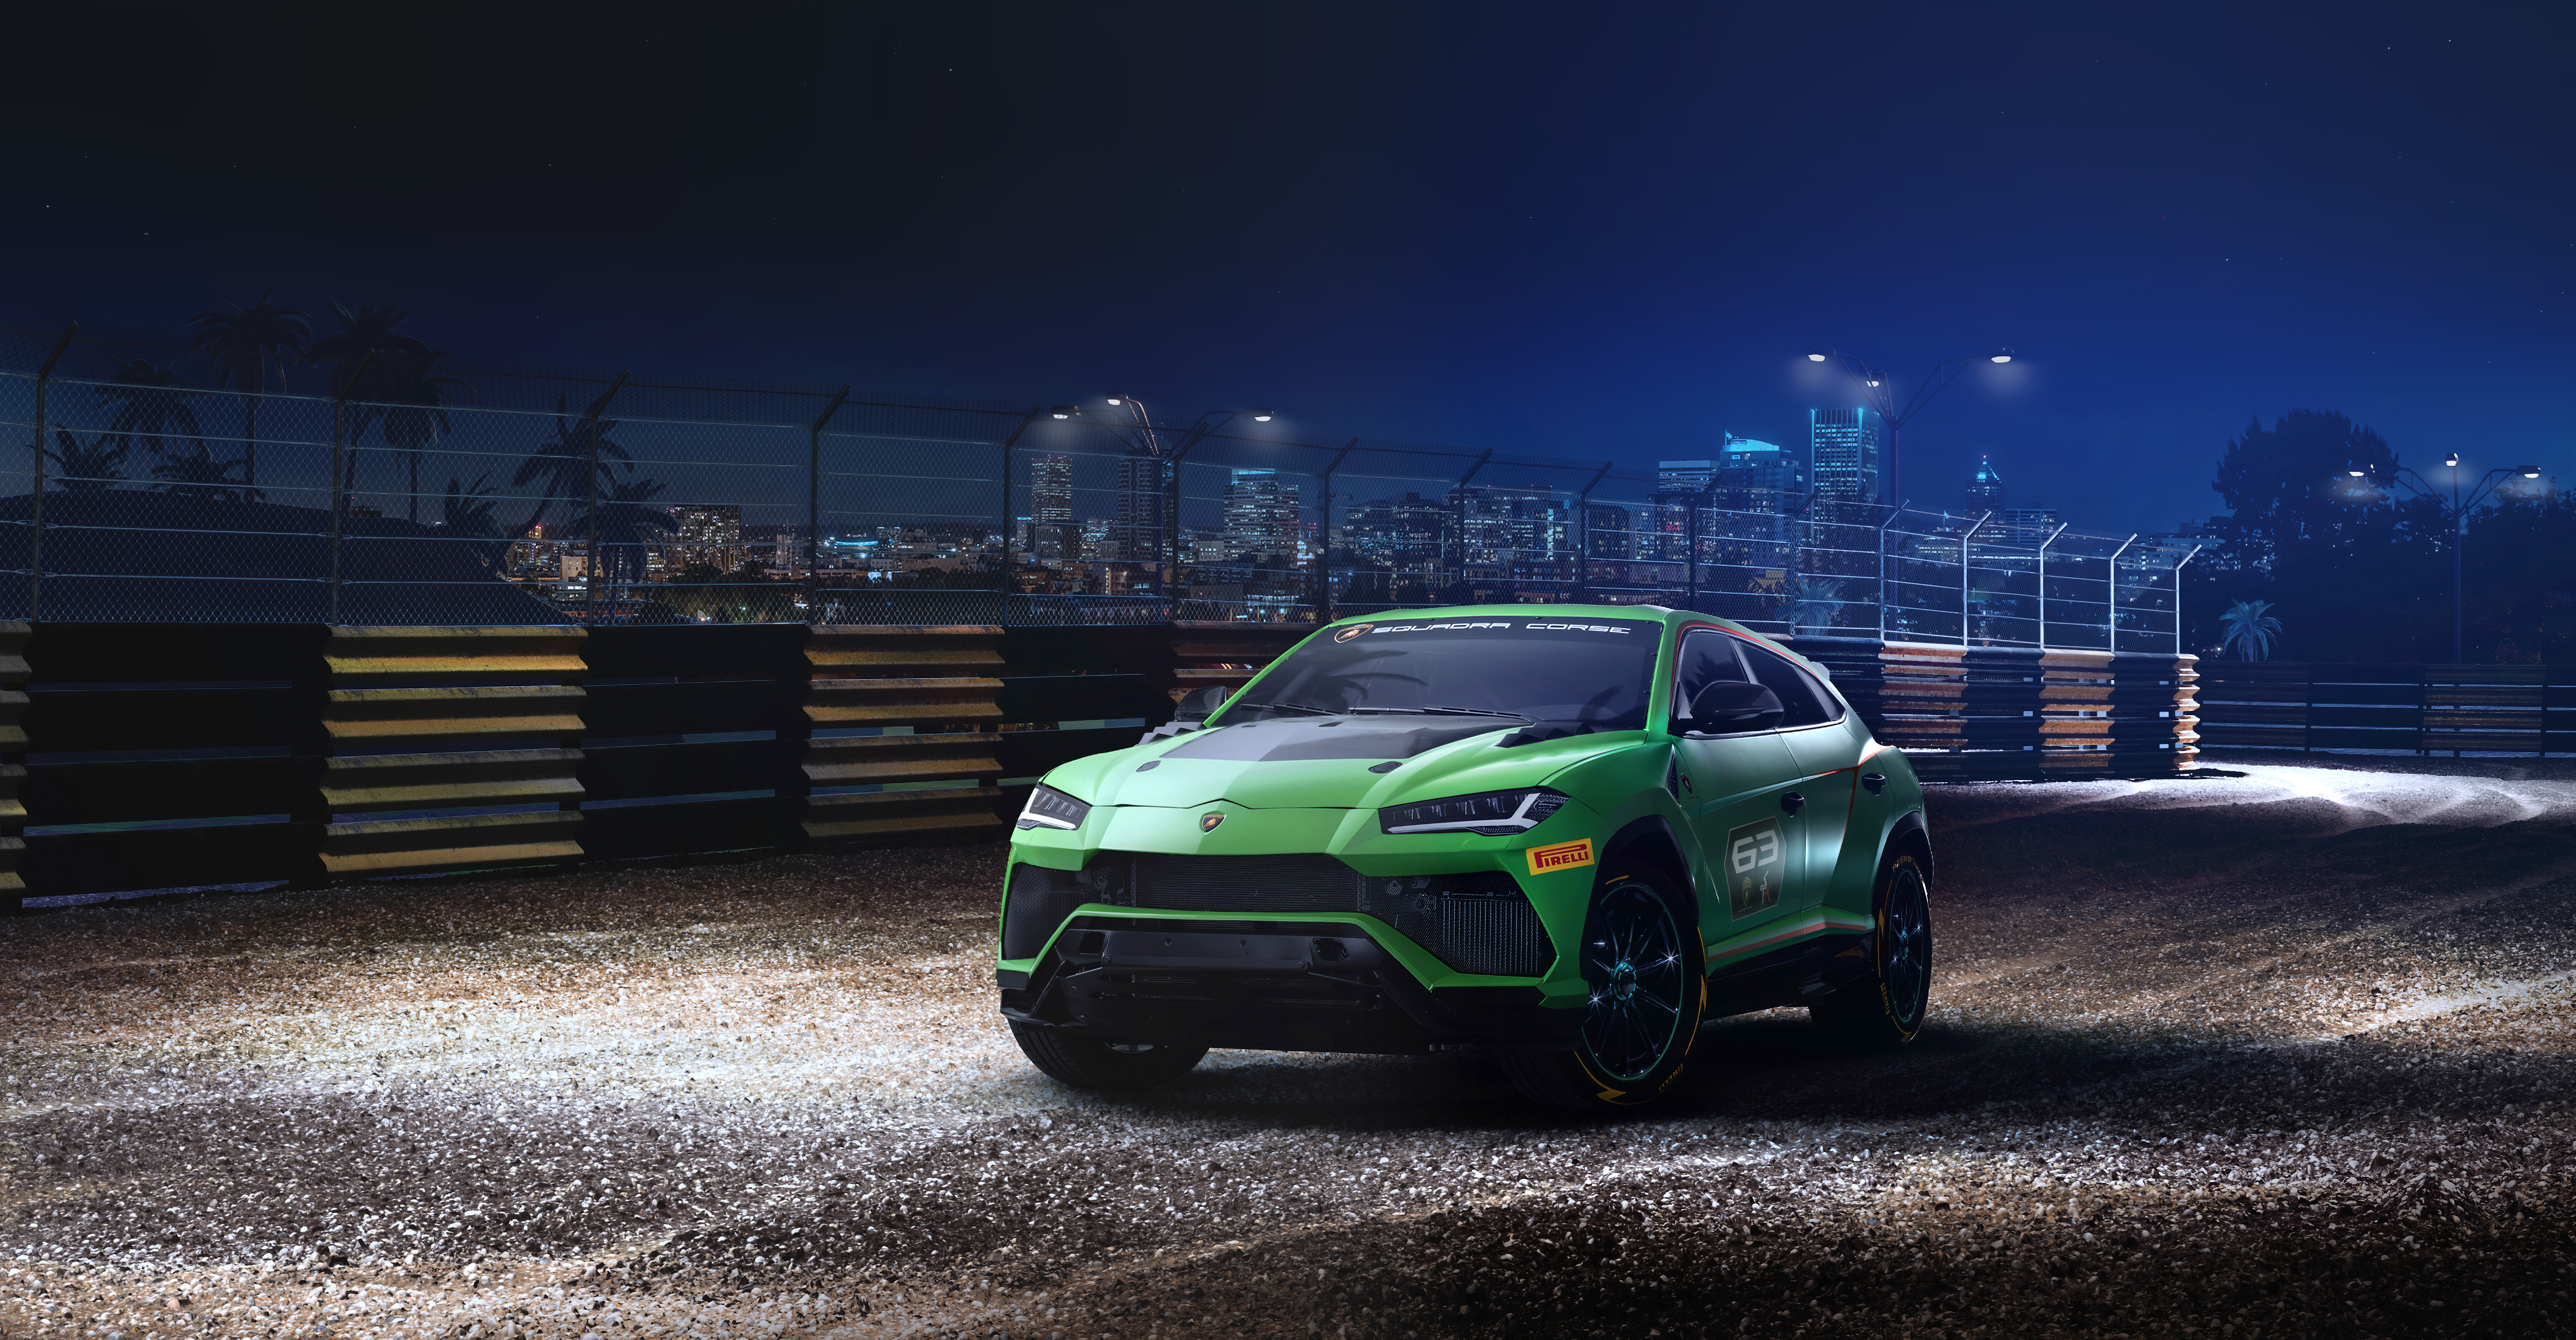 Télécharger des fonds d'écran Lamborghini Urus St X Concept HD